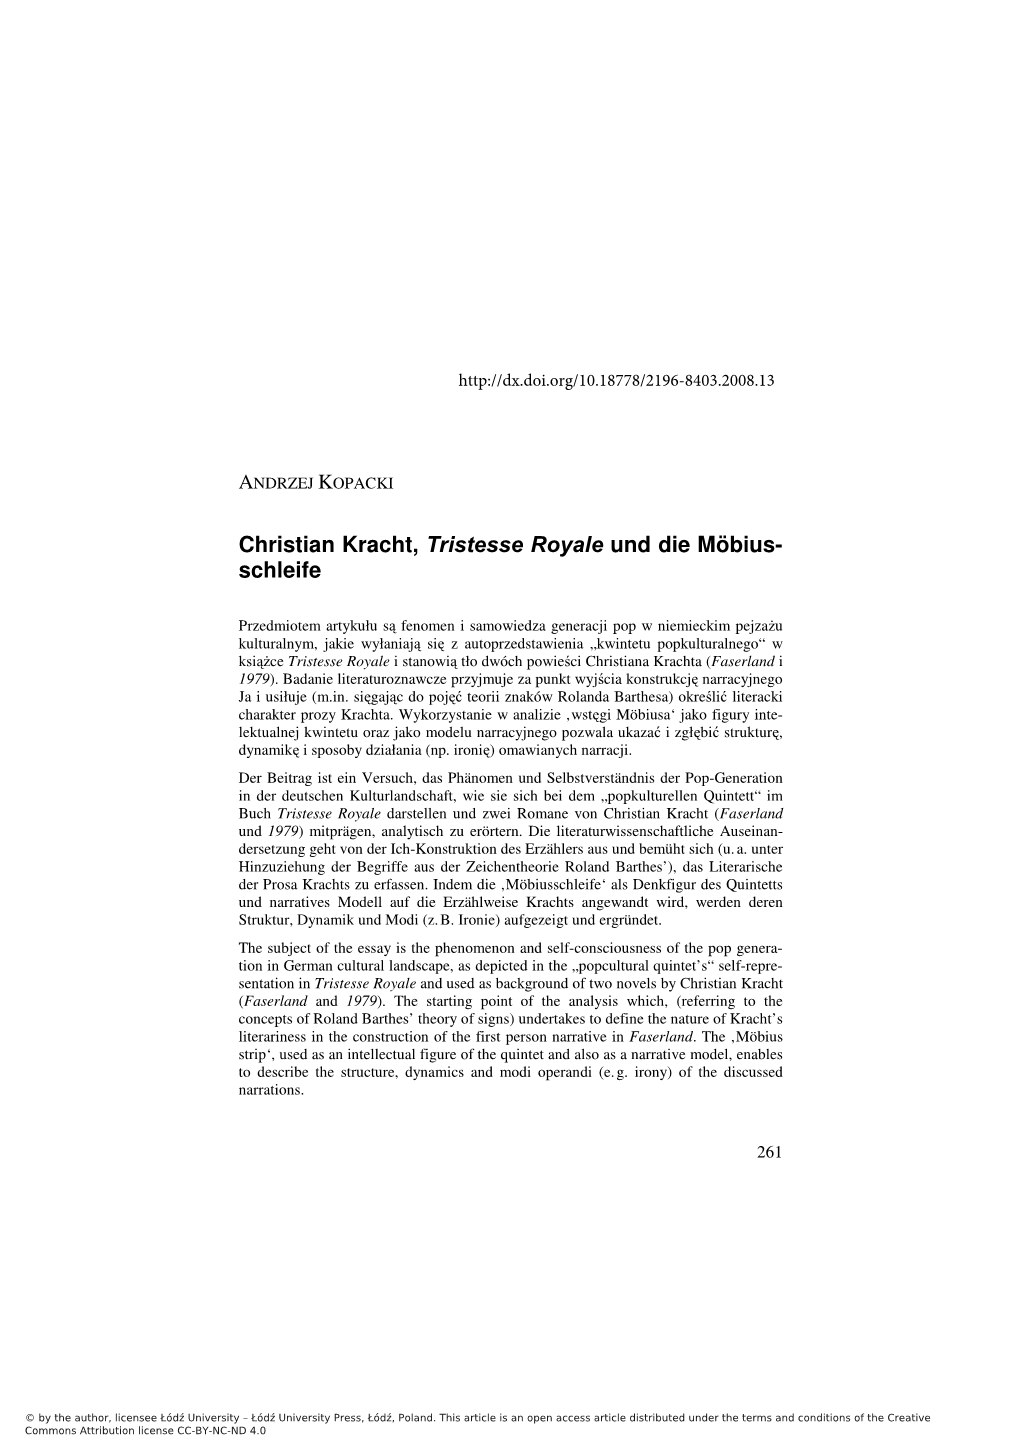 Christian Kracht, Tristesse Royale Und Die Möbius- Schleife